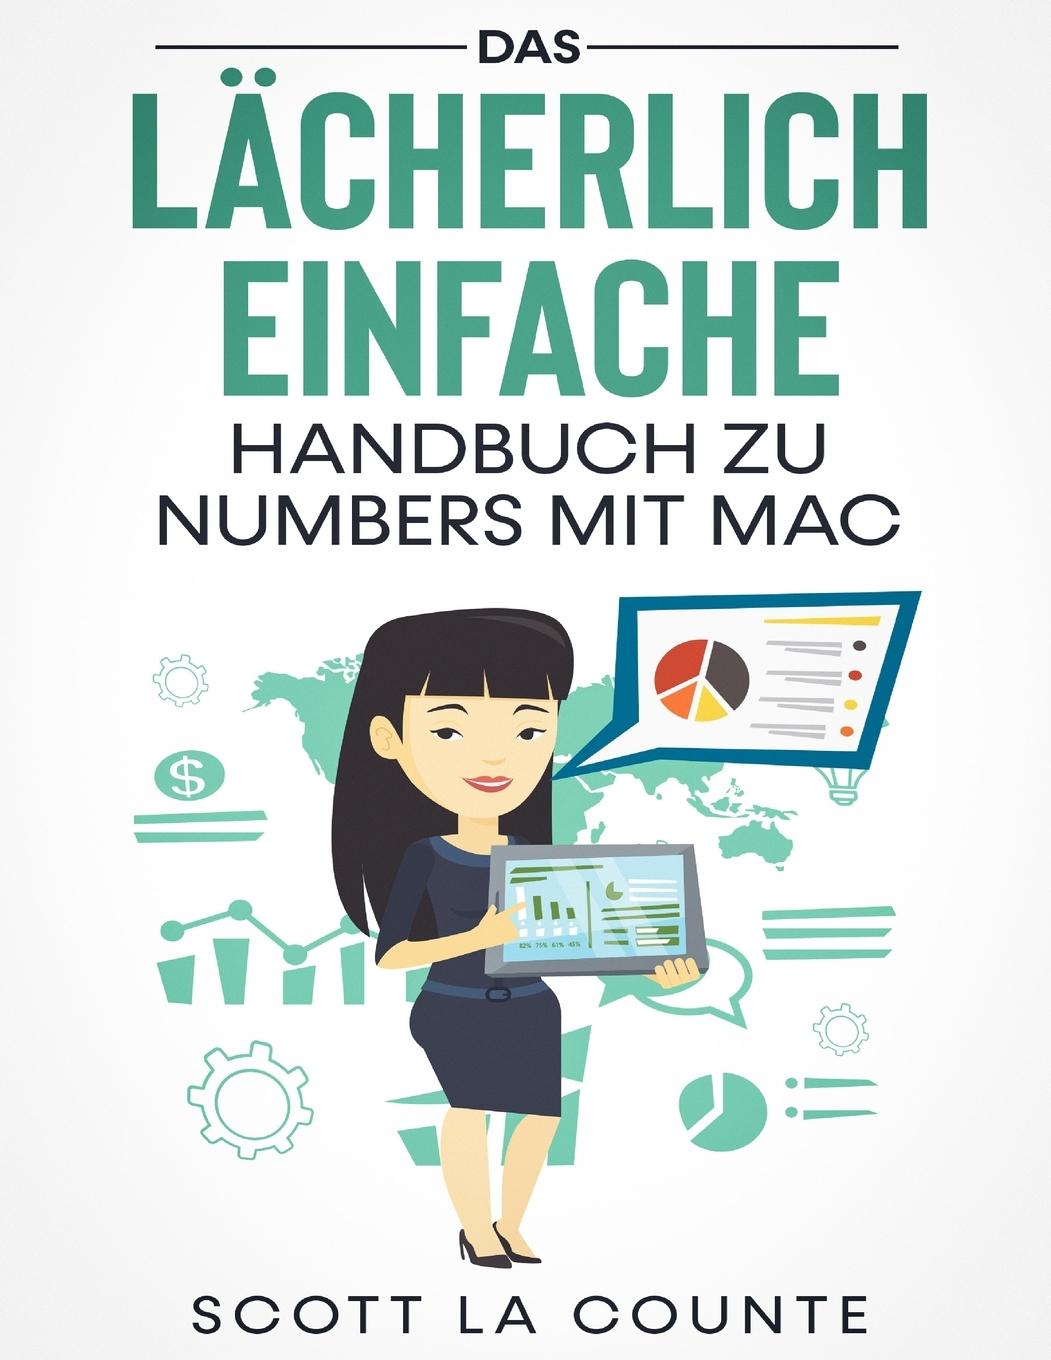 Книга Lacherlich Einfache Handbuch zu Numbers mit Mac 